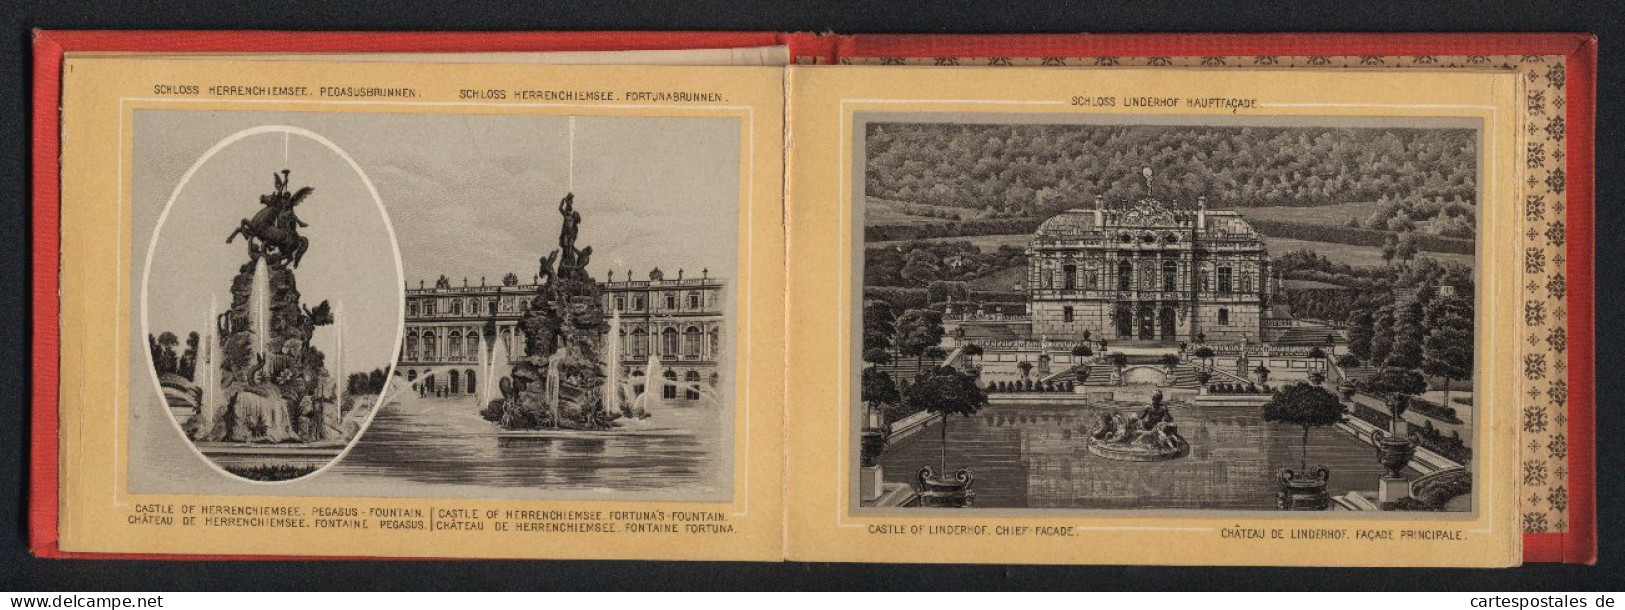 Leporello-Album Lieblingsschlösser König Ludwig II. Mit 17 Lithographie-Ansichten, Linderhof, Kiosk, Neuschwanstein,  - Lithographien